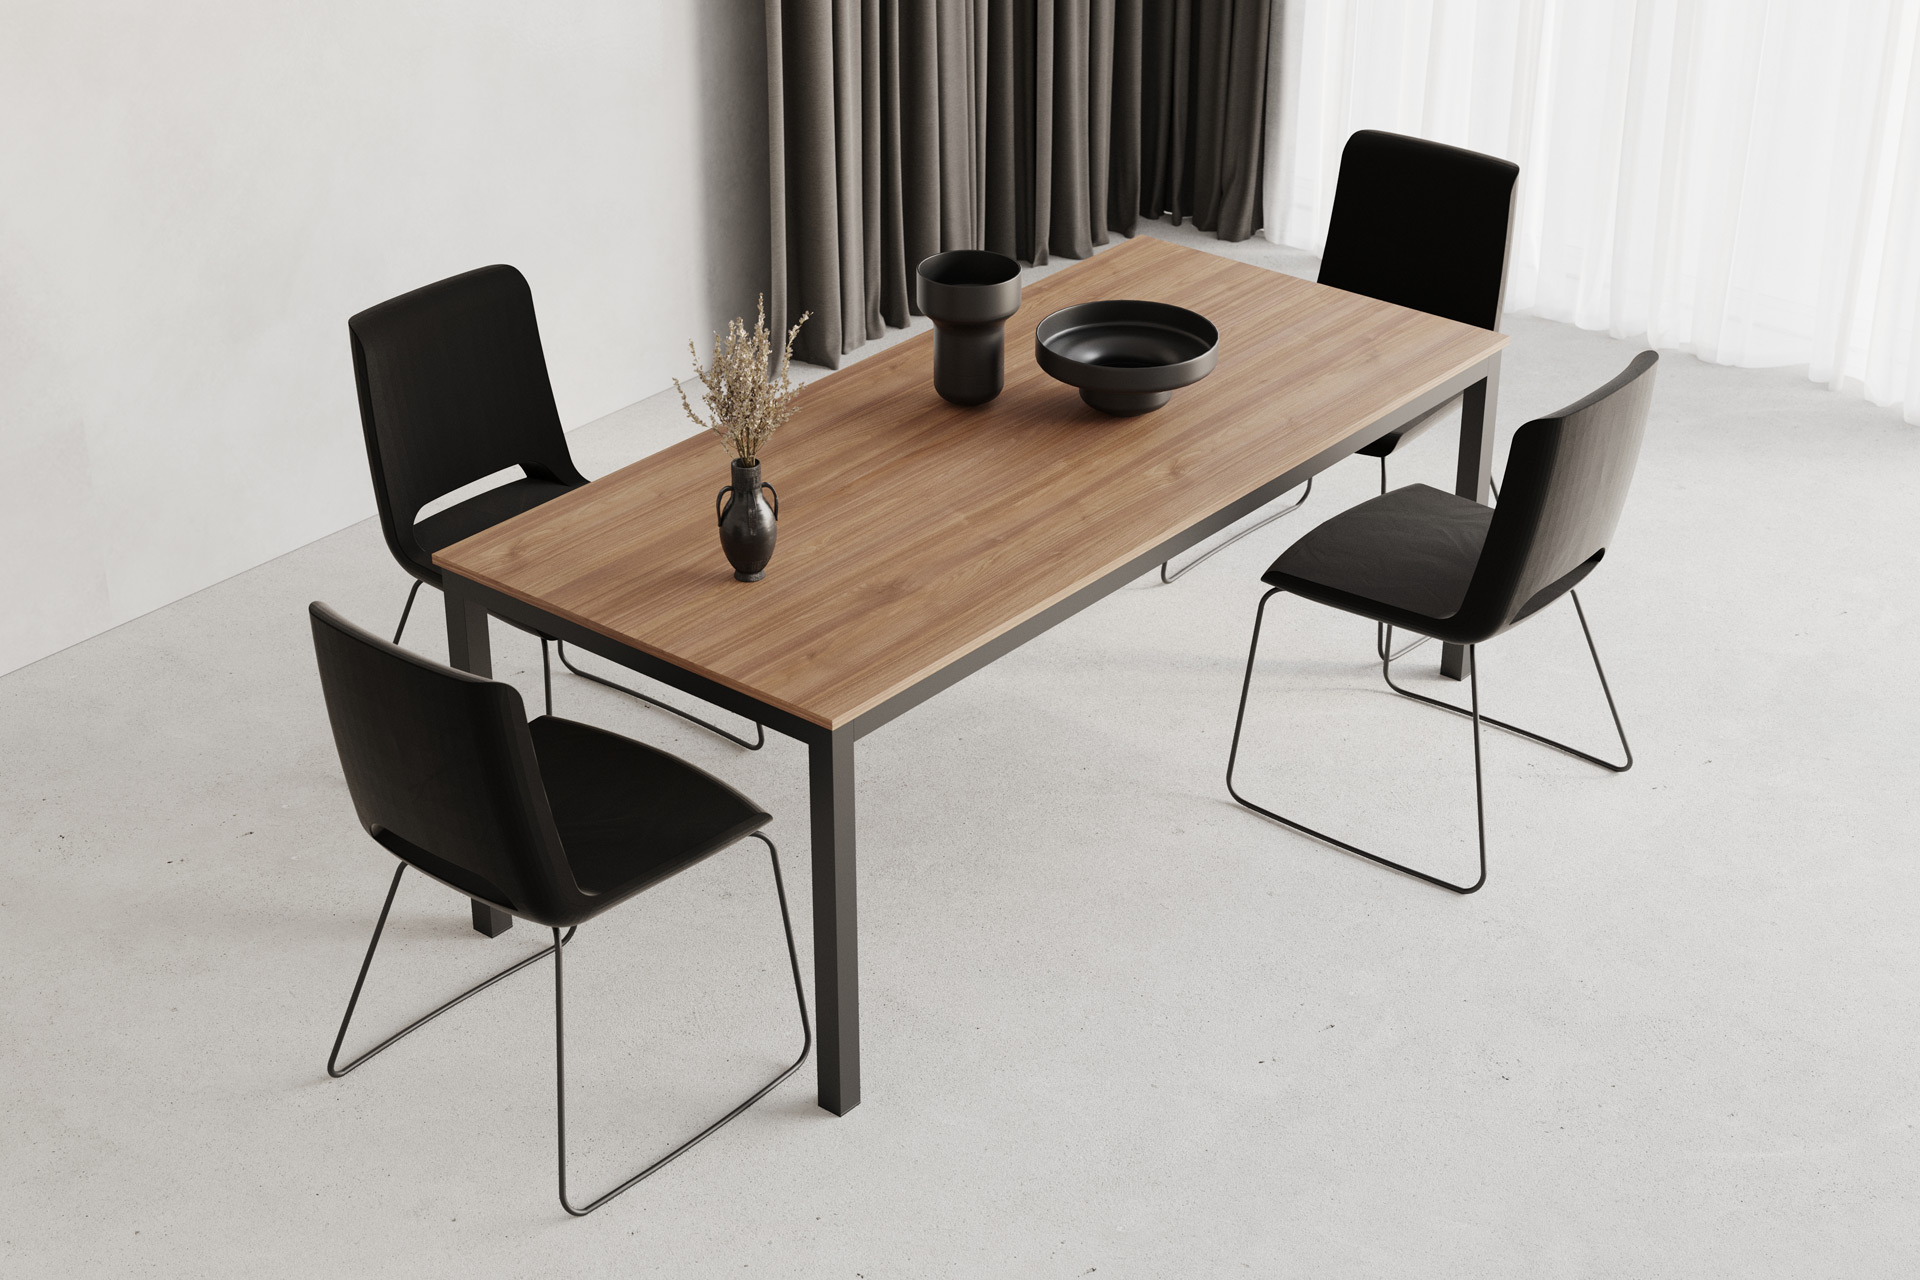 Hanak furniture Dininig table